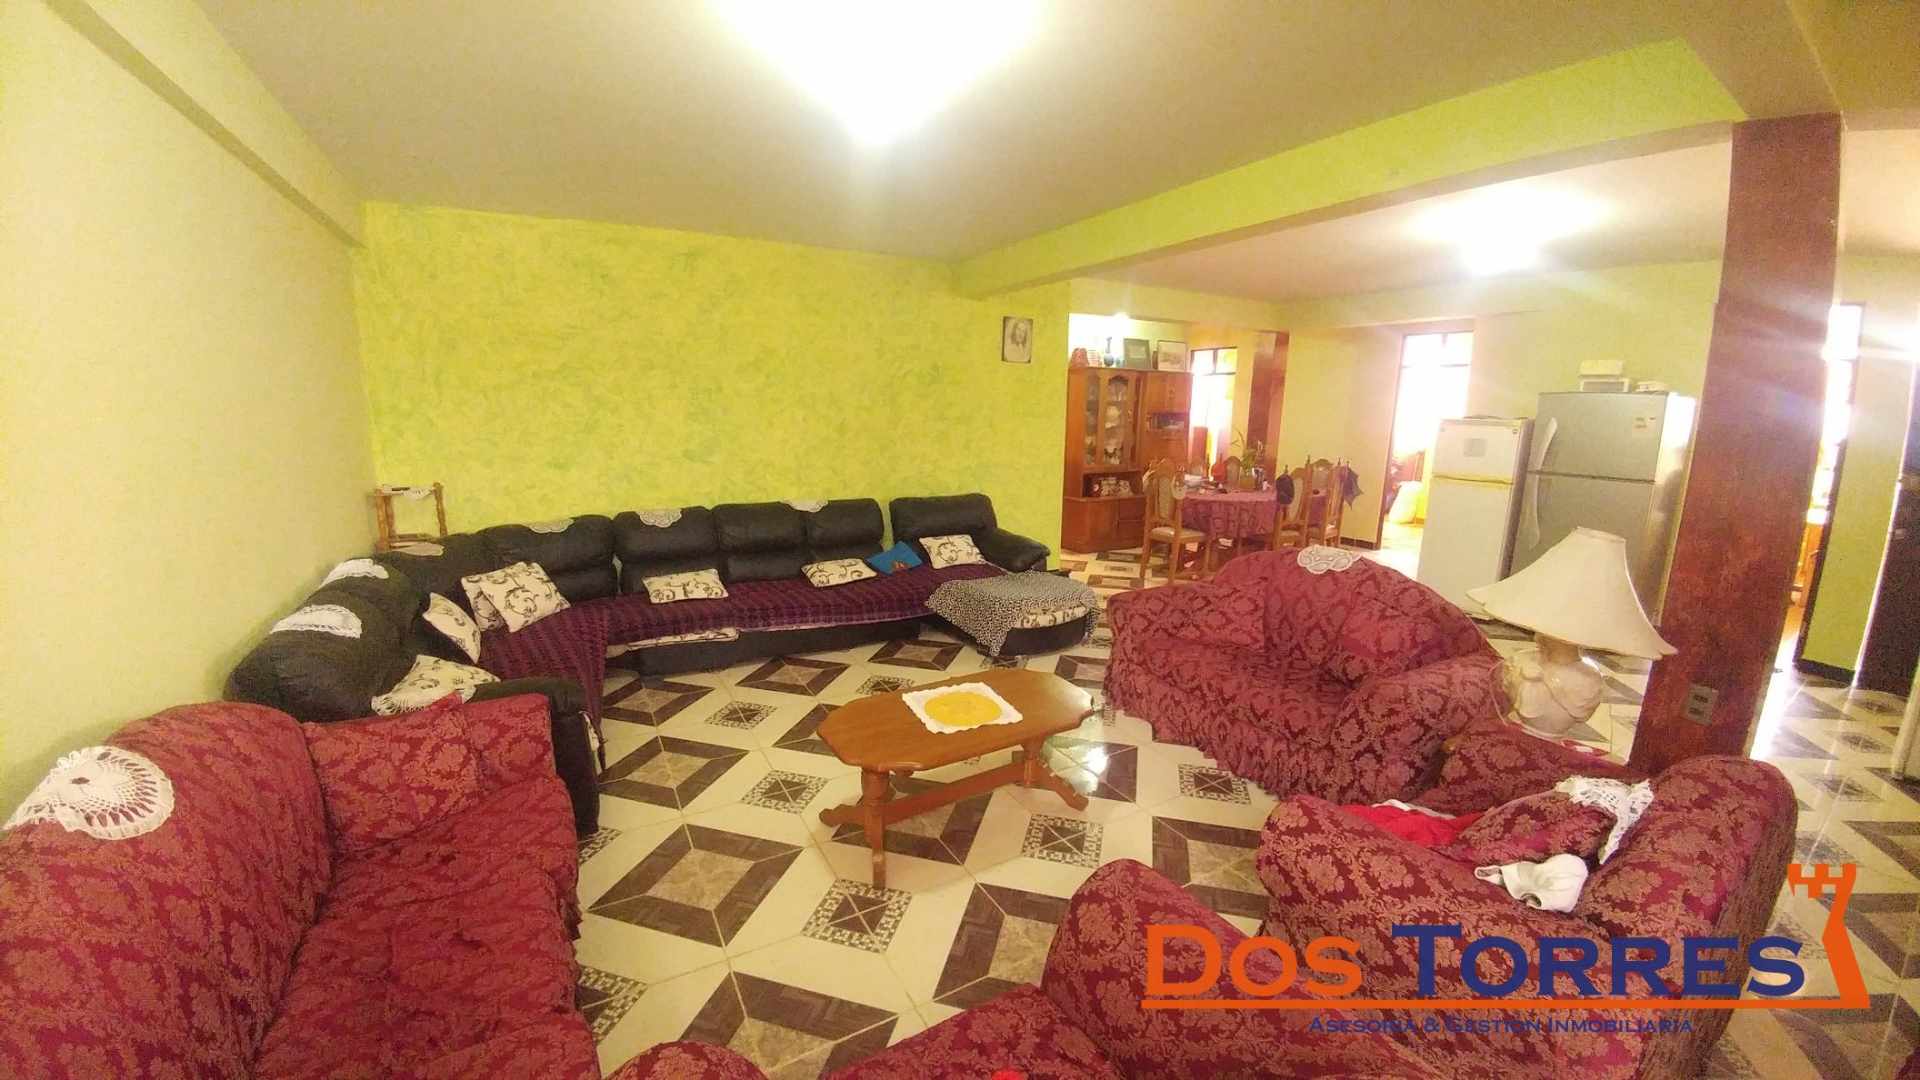 Casa en Venta137.000$us Chillimarca casa en venta con 5 Dormitorios - Ref. 910 Foto 10